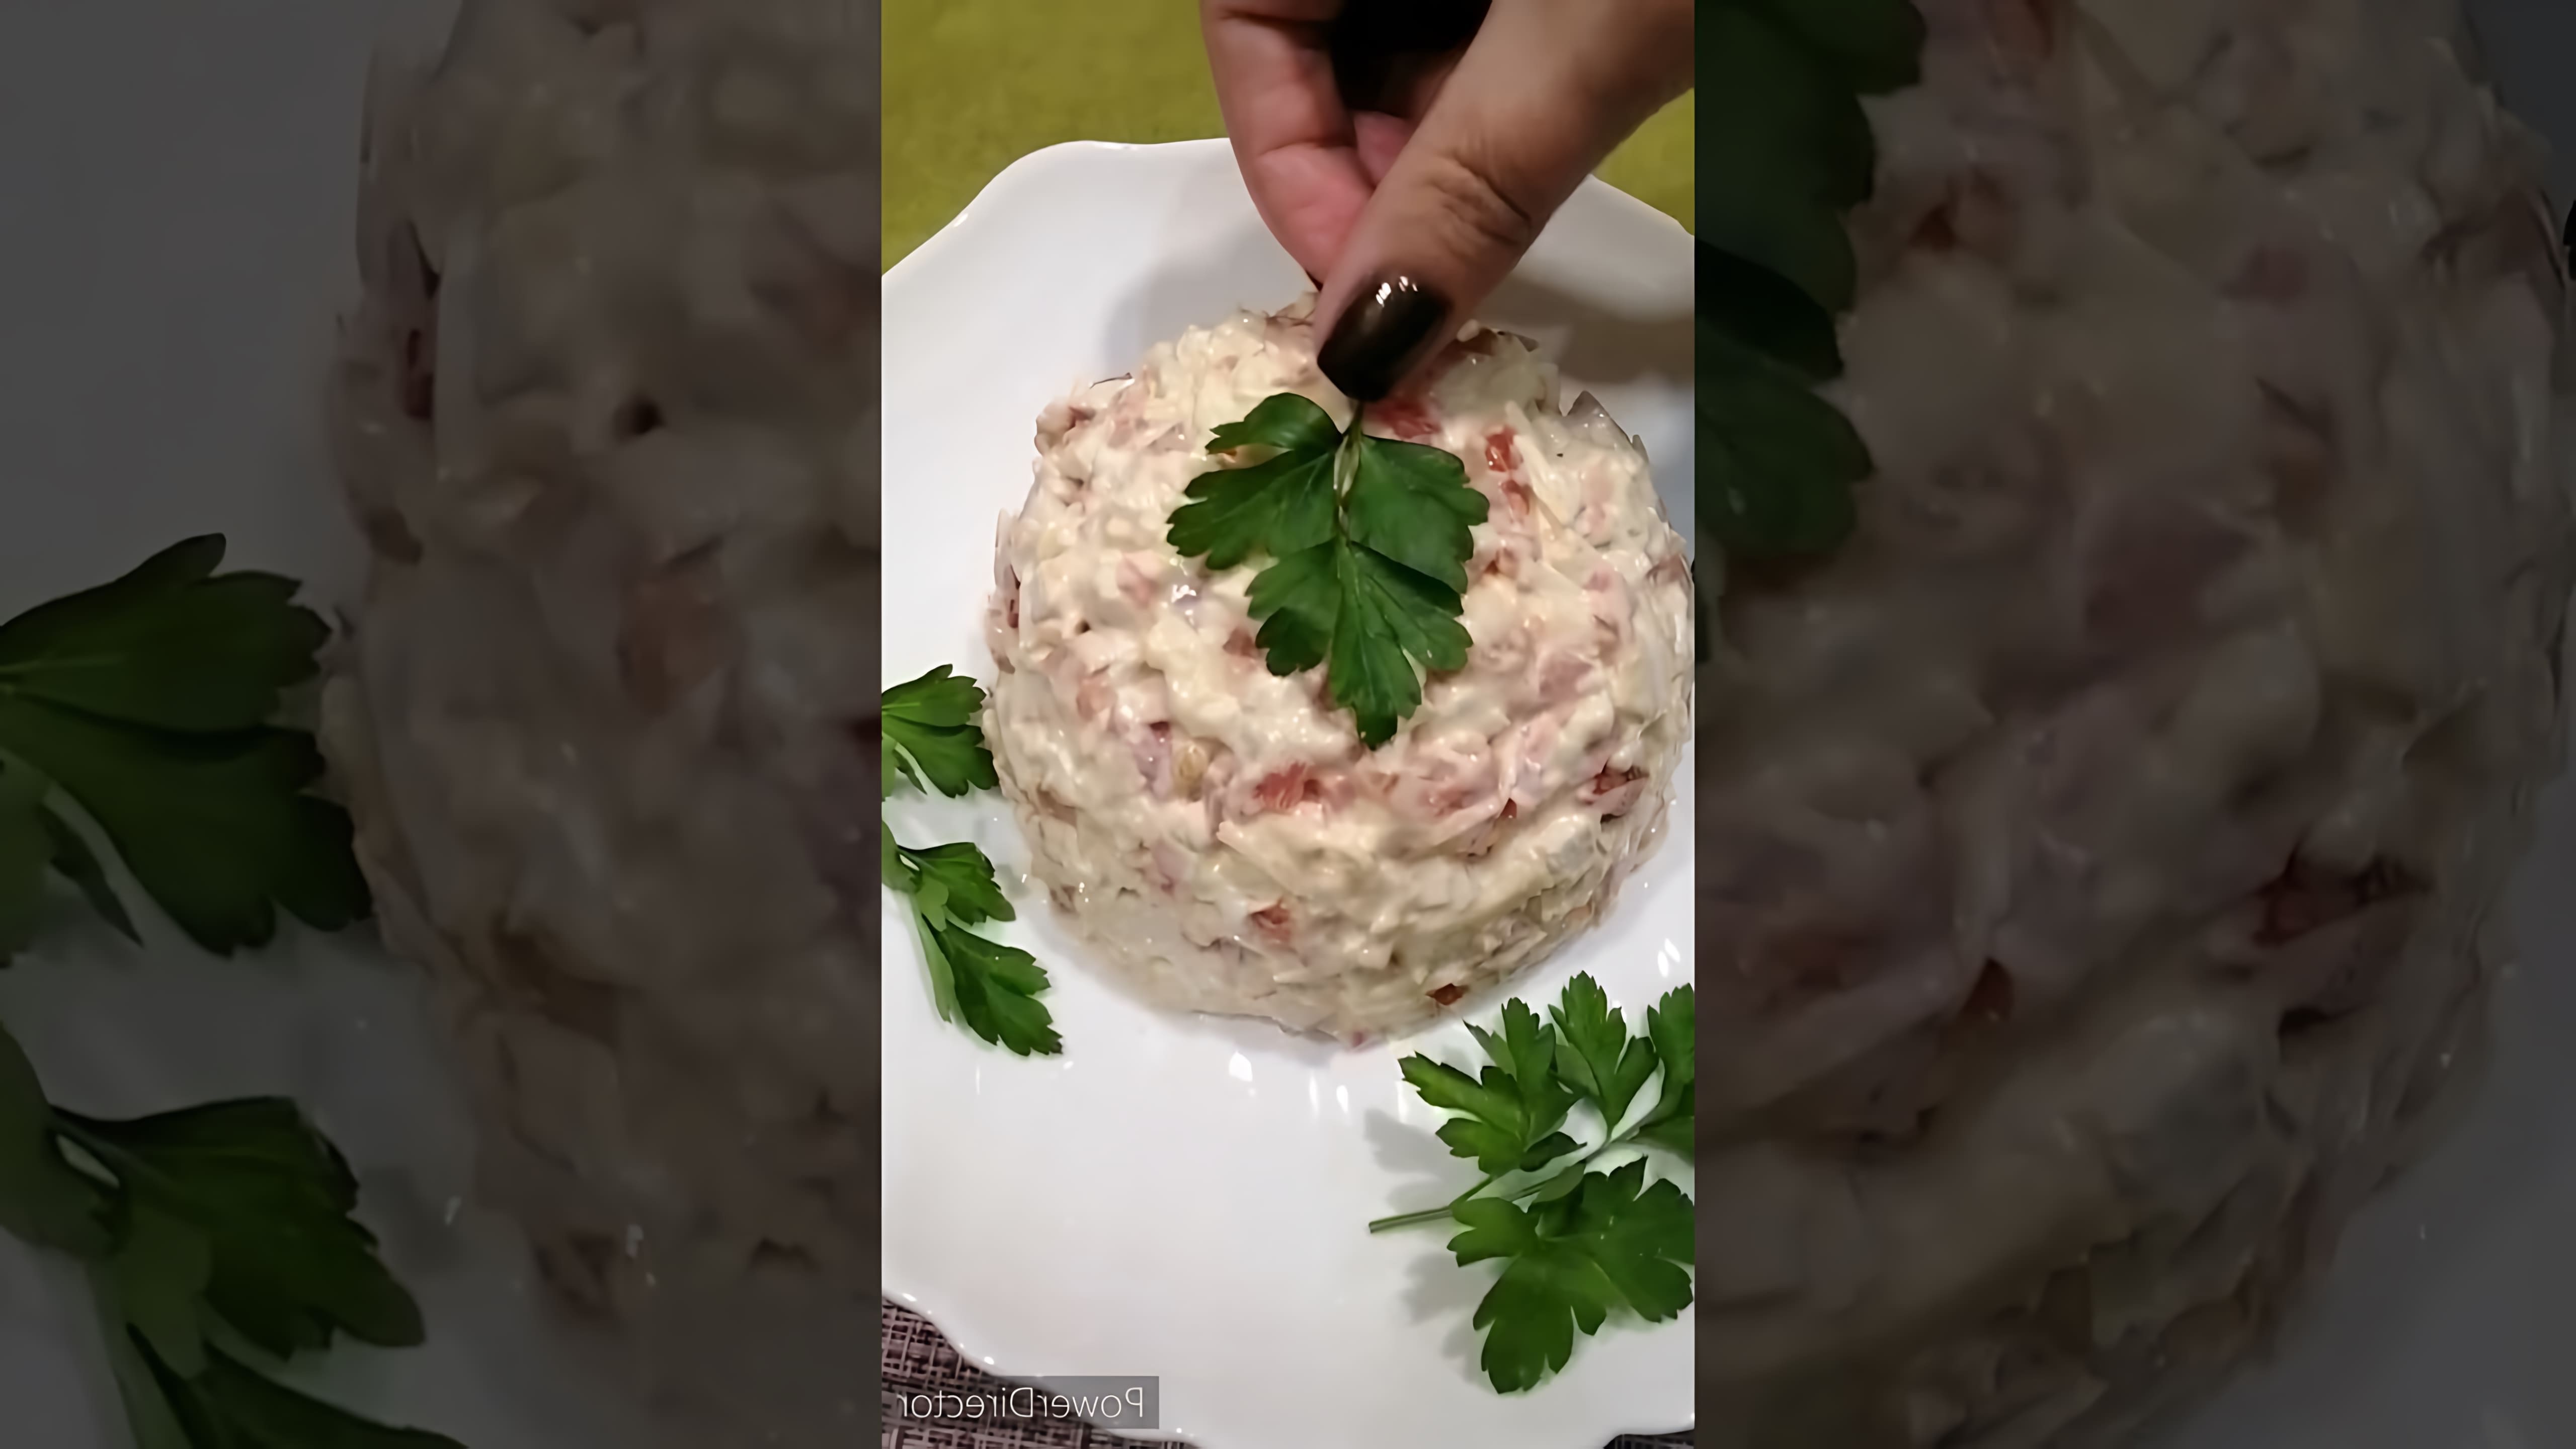 В этом видео демонстрируется рецепт приготовления салата "Дипломат" с крабовыми палочками